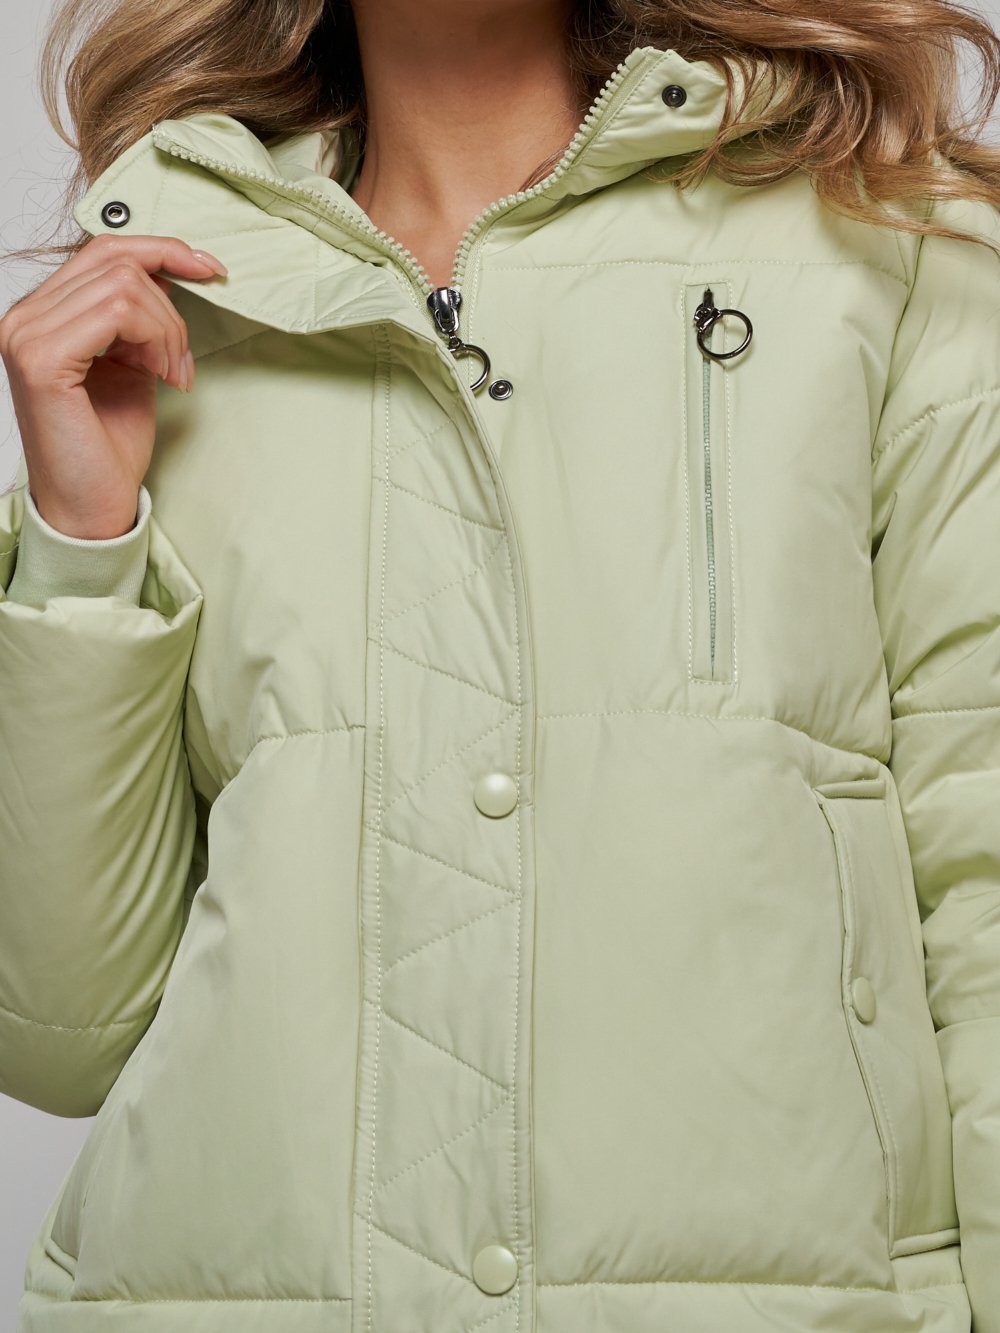 Купить куртку зимнюю оптом от производителя недорого в Москве 52308Sl 1